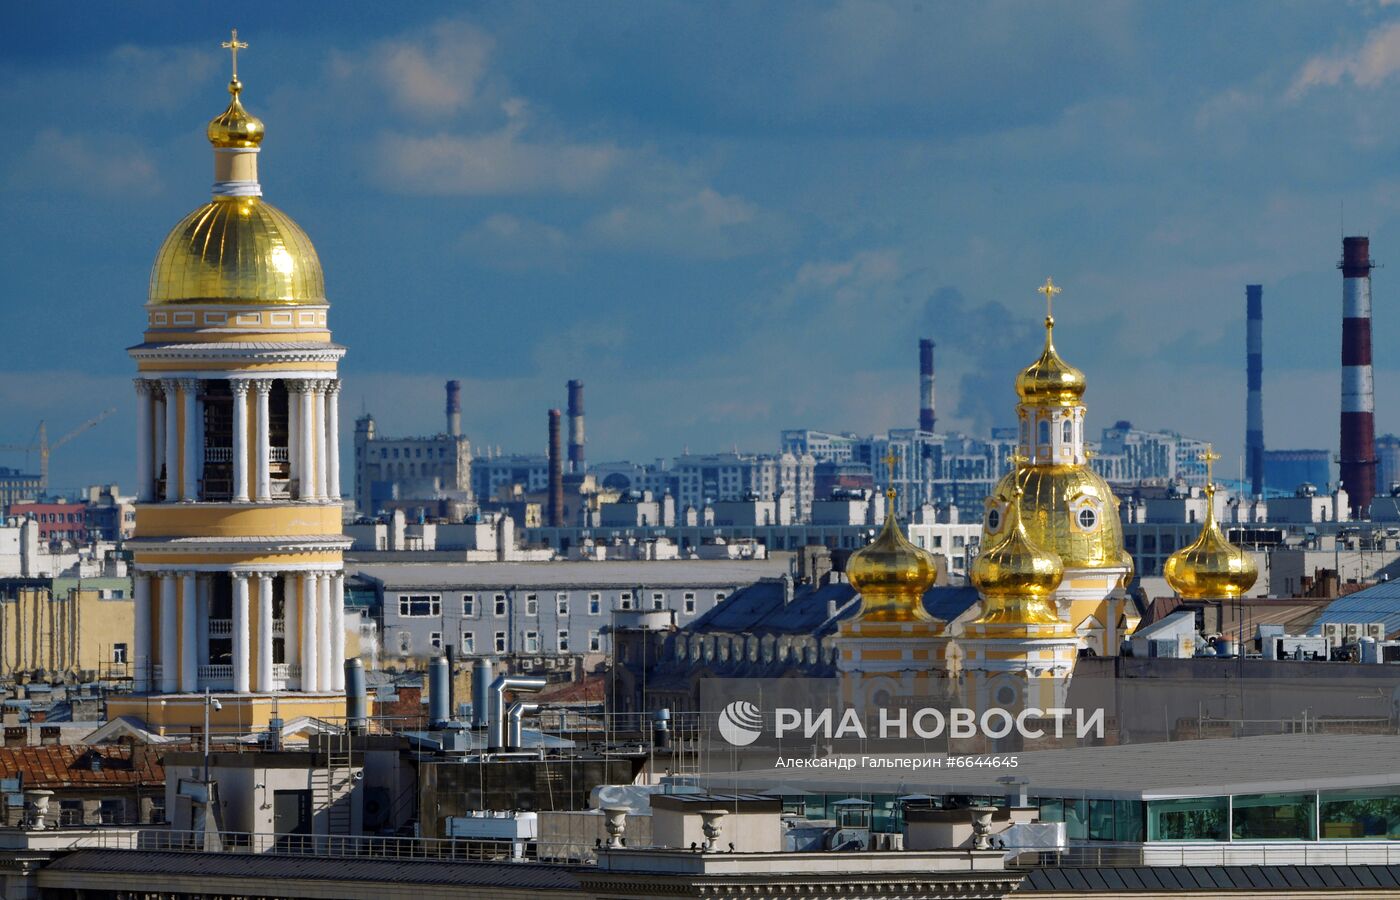 Смотровая площадка Думской башни открылась в Санкт-Петербурге